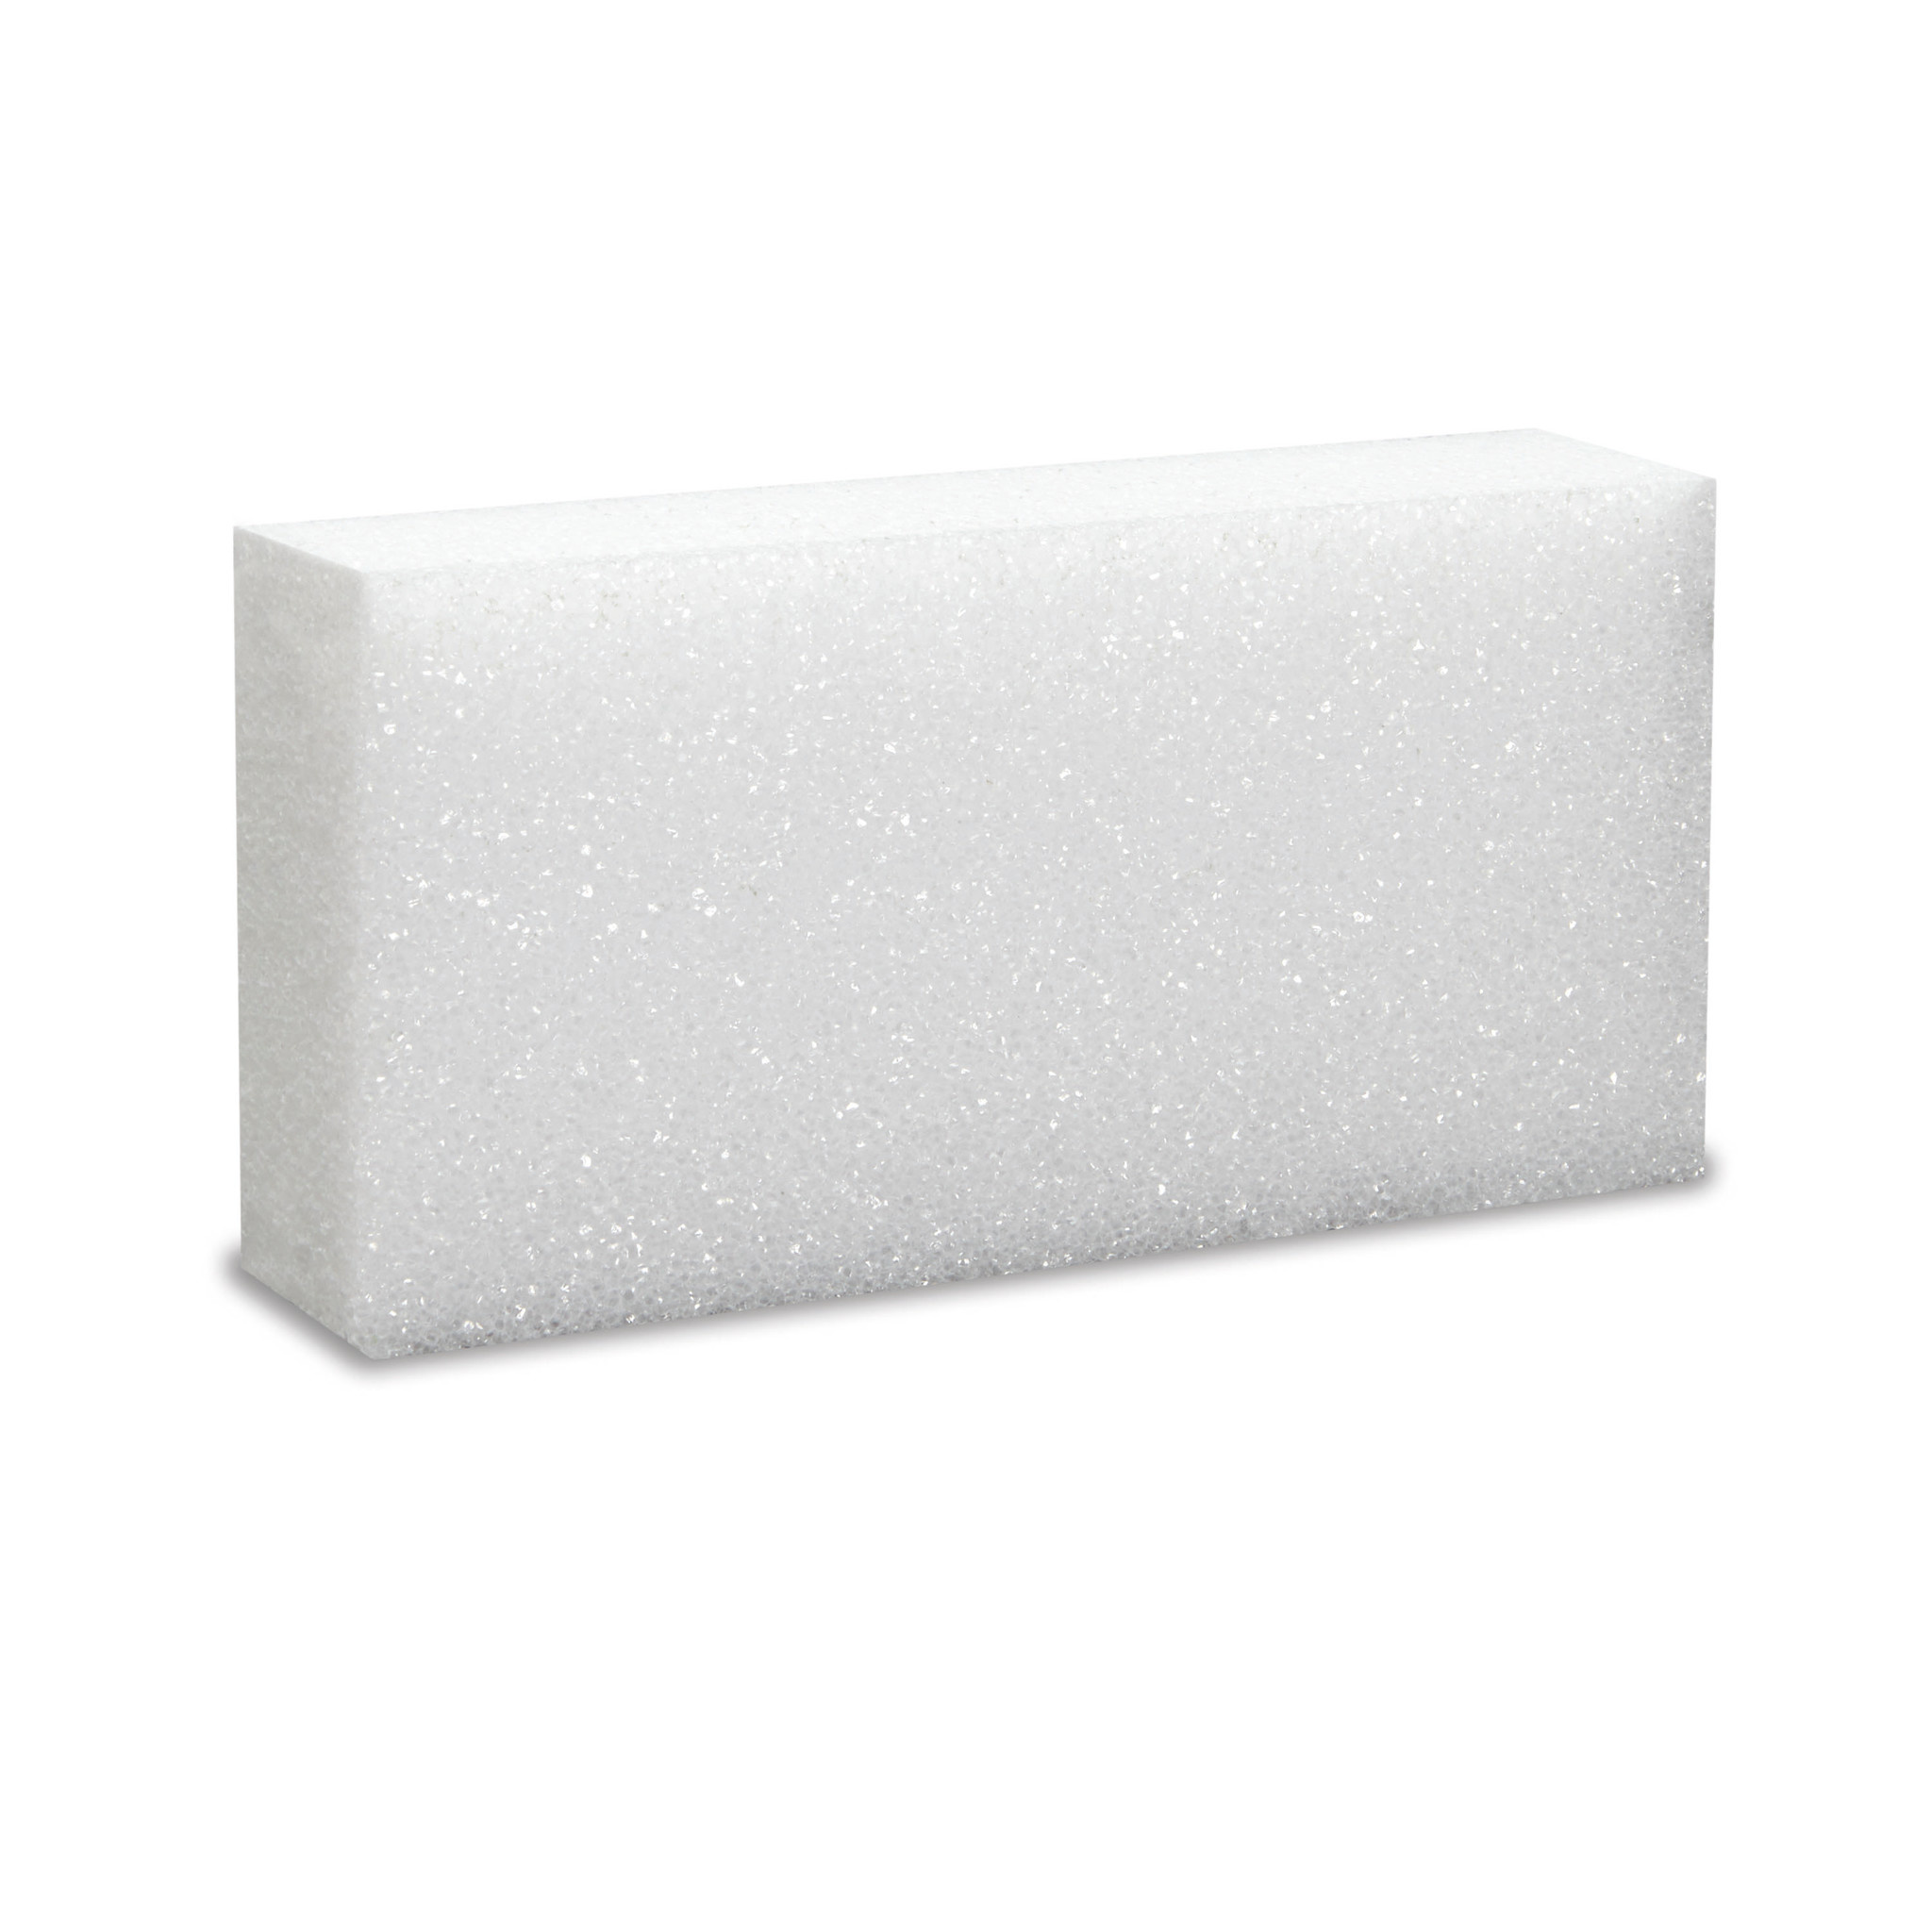 White Styrofoam/polystyrene/eps Foam Block 12 X 14 X 22 